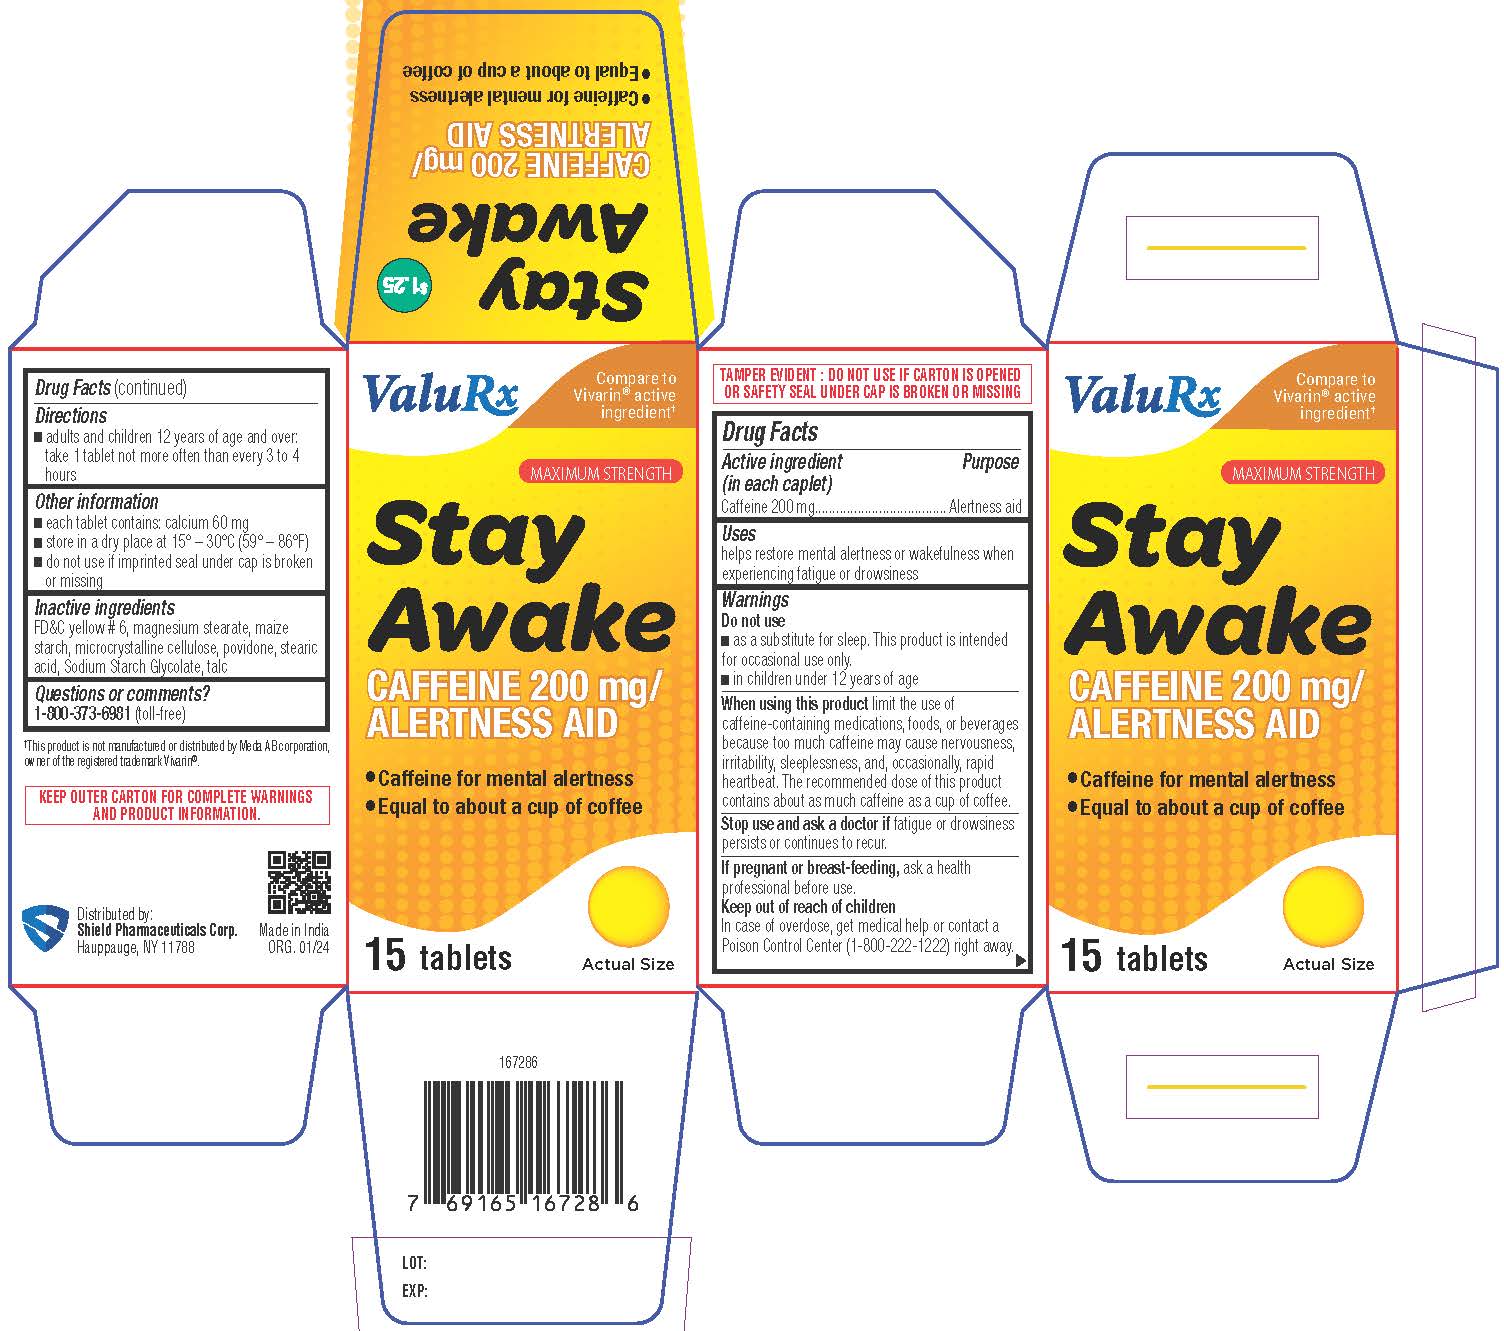 Stay Awake Carton